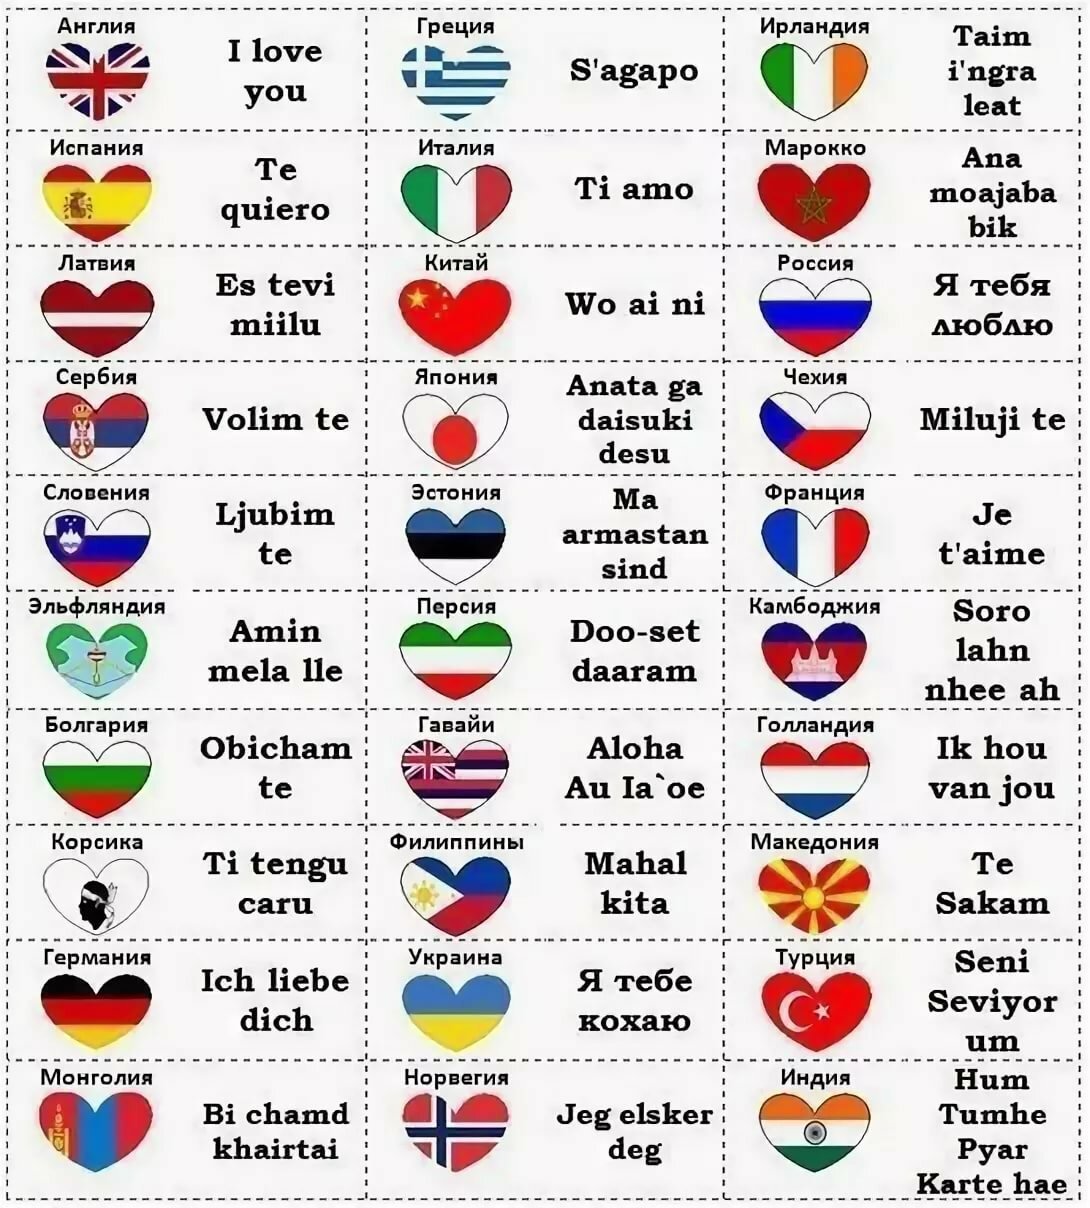 Поздравления с днём рождения на 109 языках мира